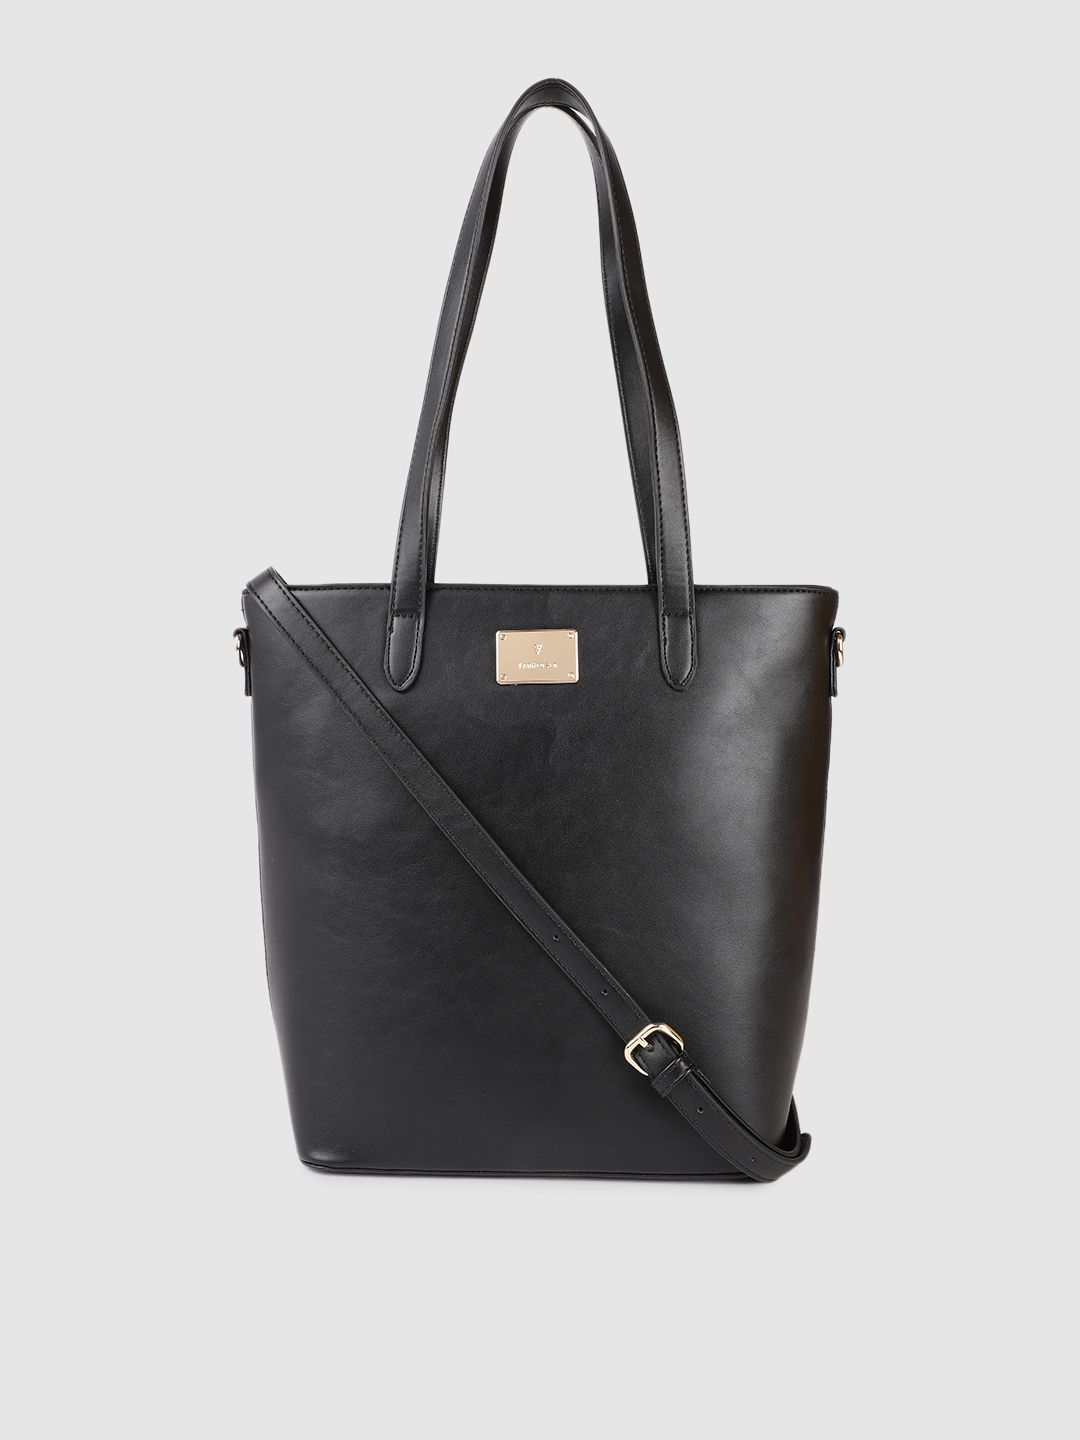 Van Heusen Black Structured Shoulder Bag Price in India